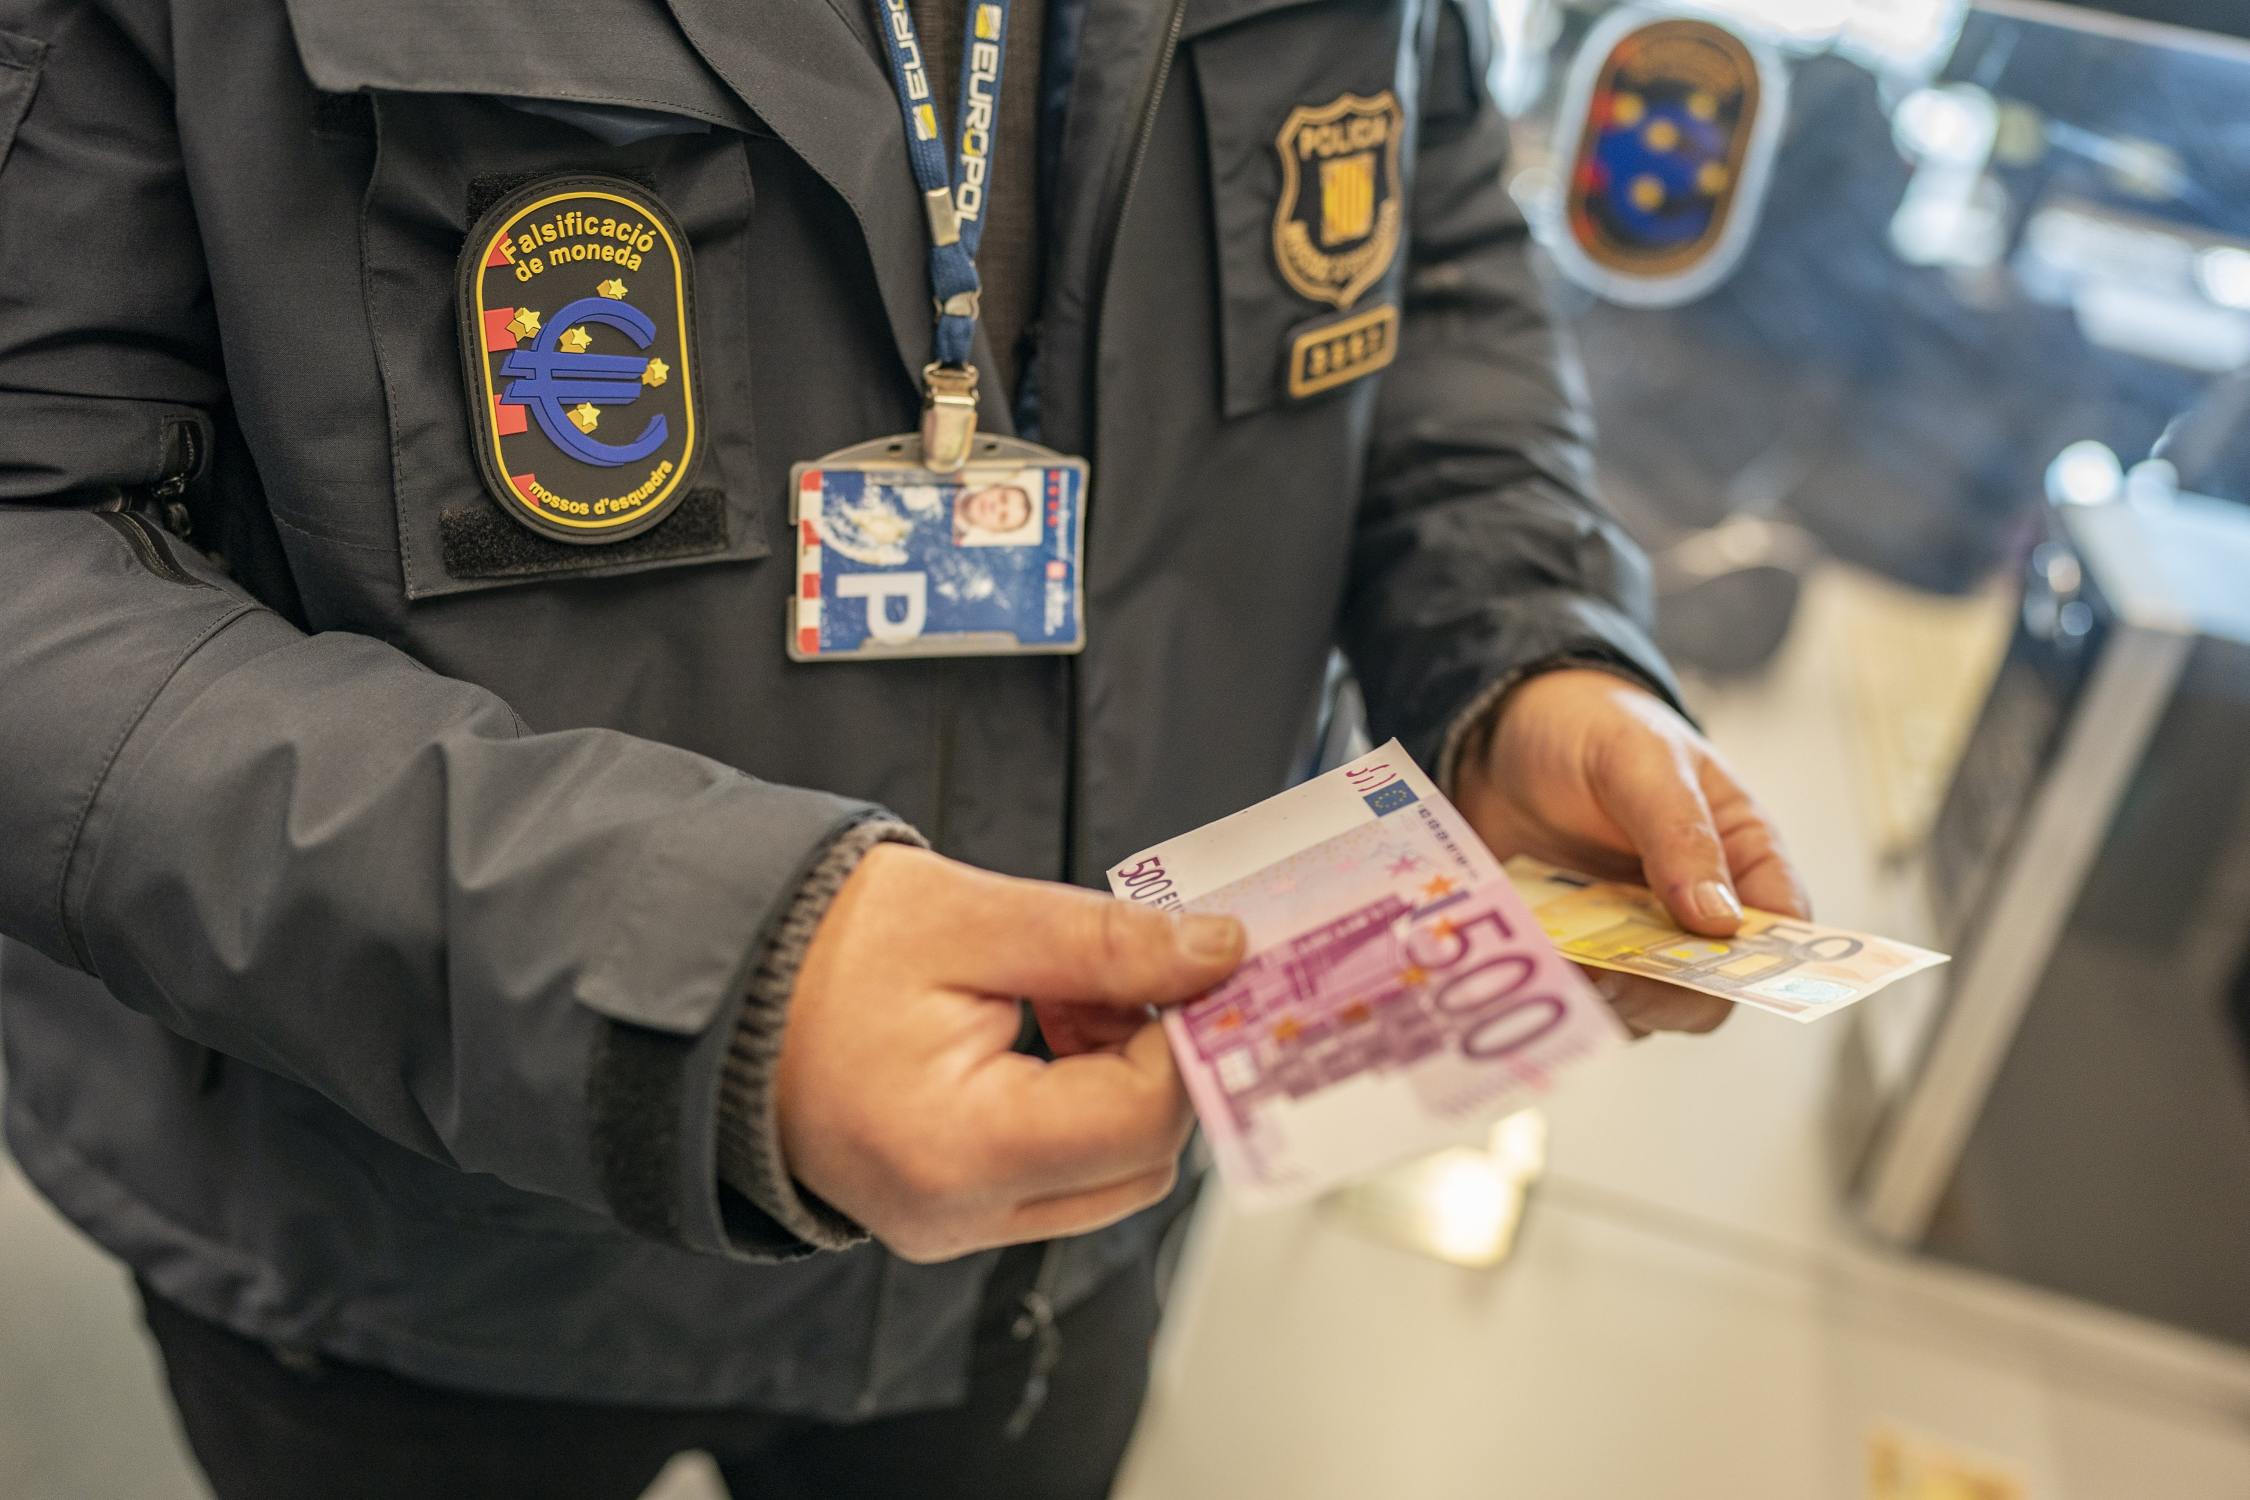 La facilitat de comprar bitllets falsos empeny joves al món criminal: de 8 a 12 anys de presó